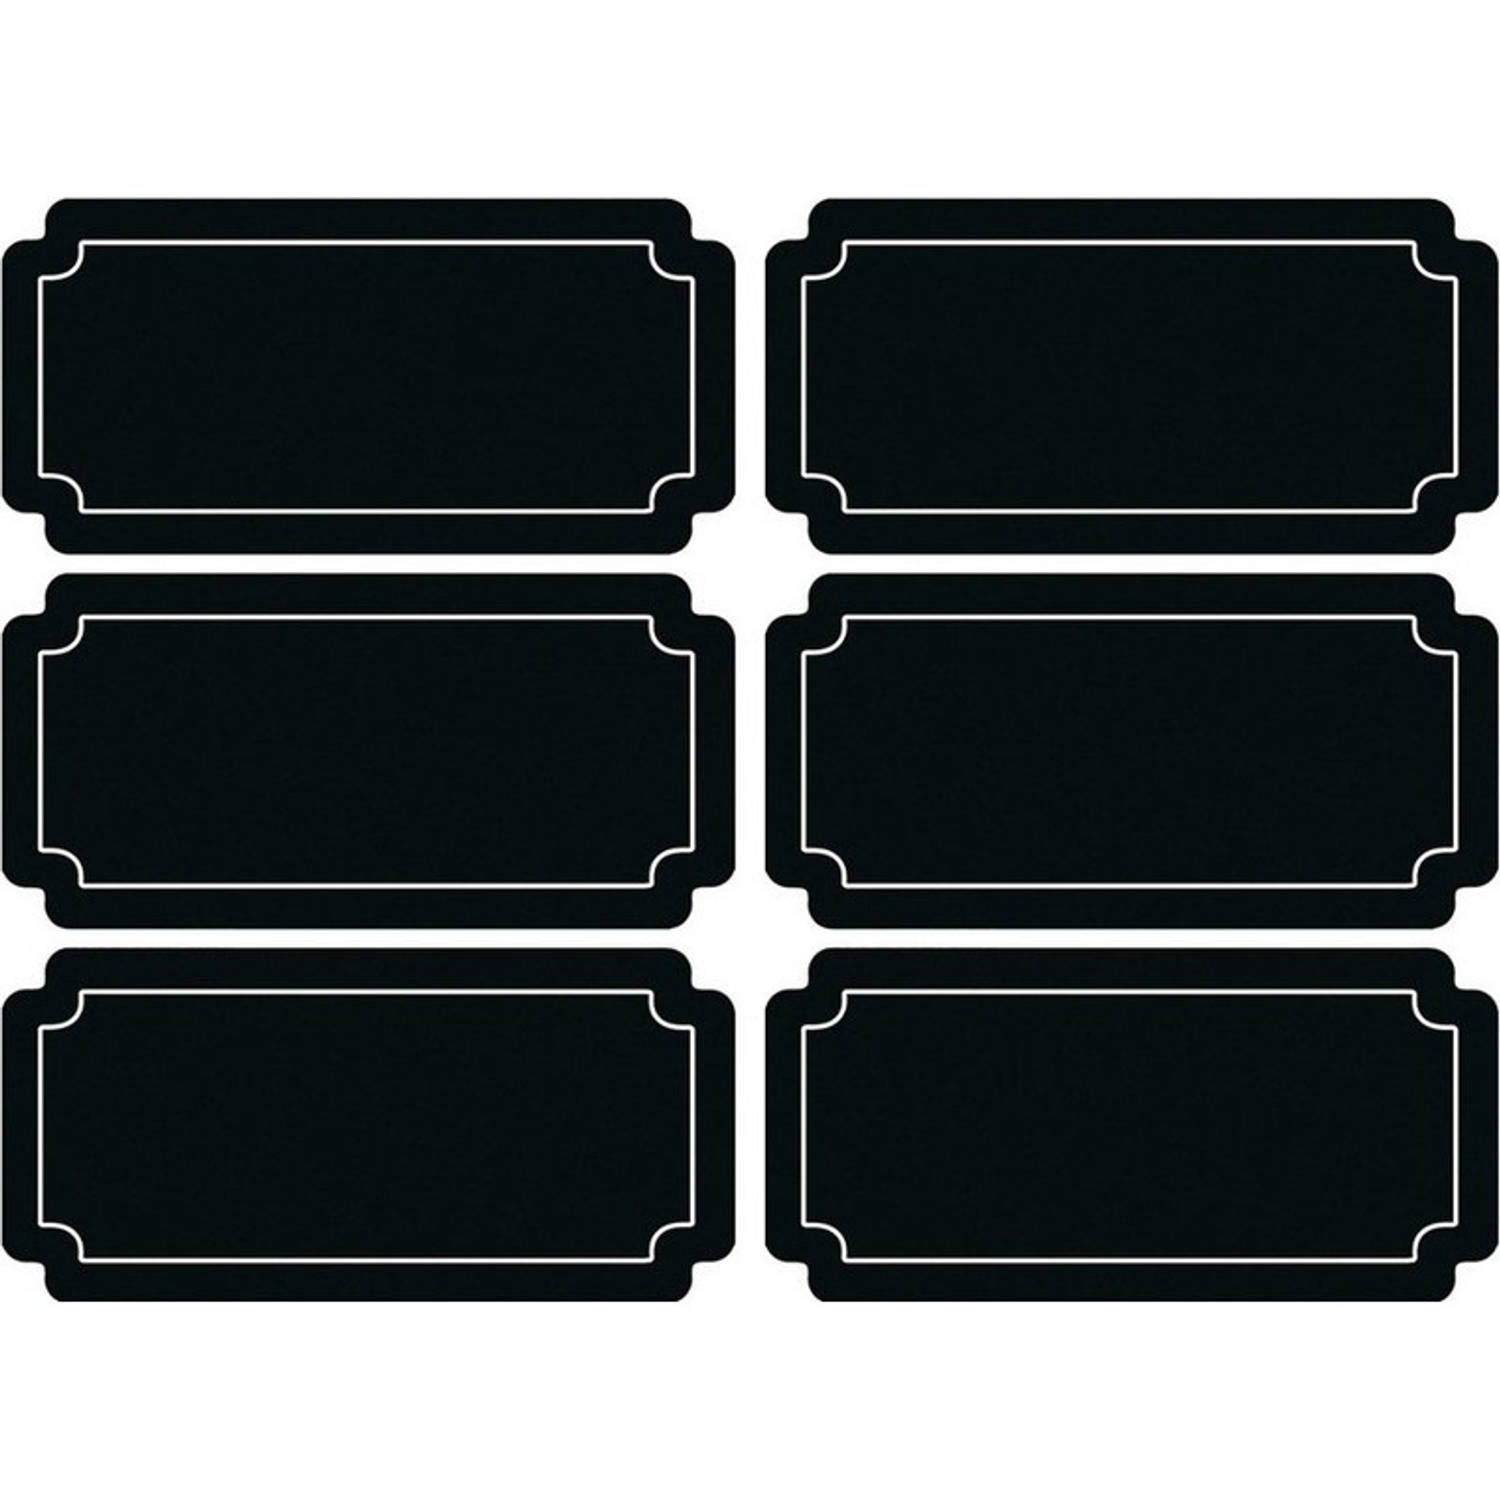 24x Krijtbord Etiketten/stickers Rechthoekig Herschrijfbaar - Kantoor Labels - Schoolbordverf Stickers - Zwart